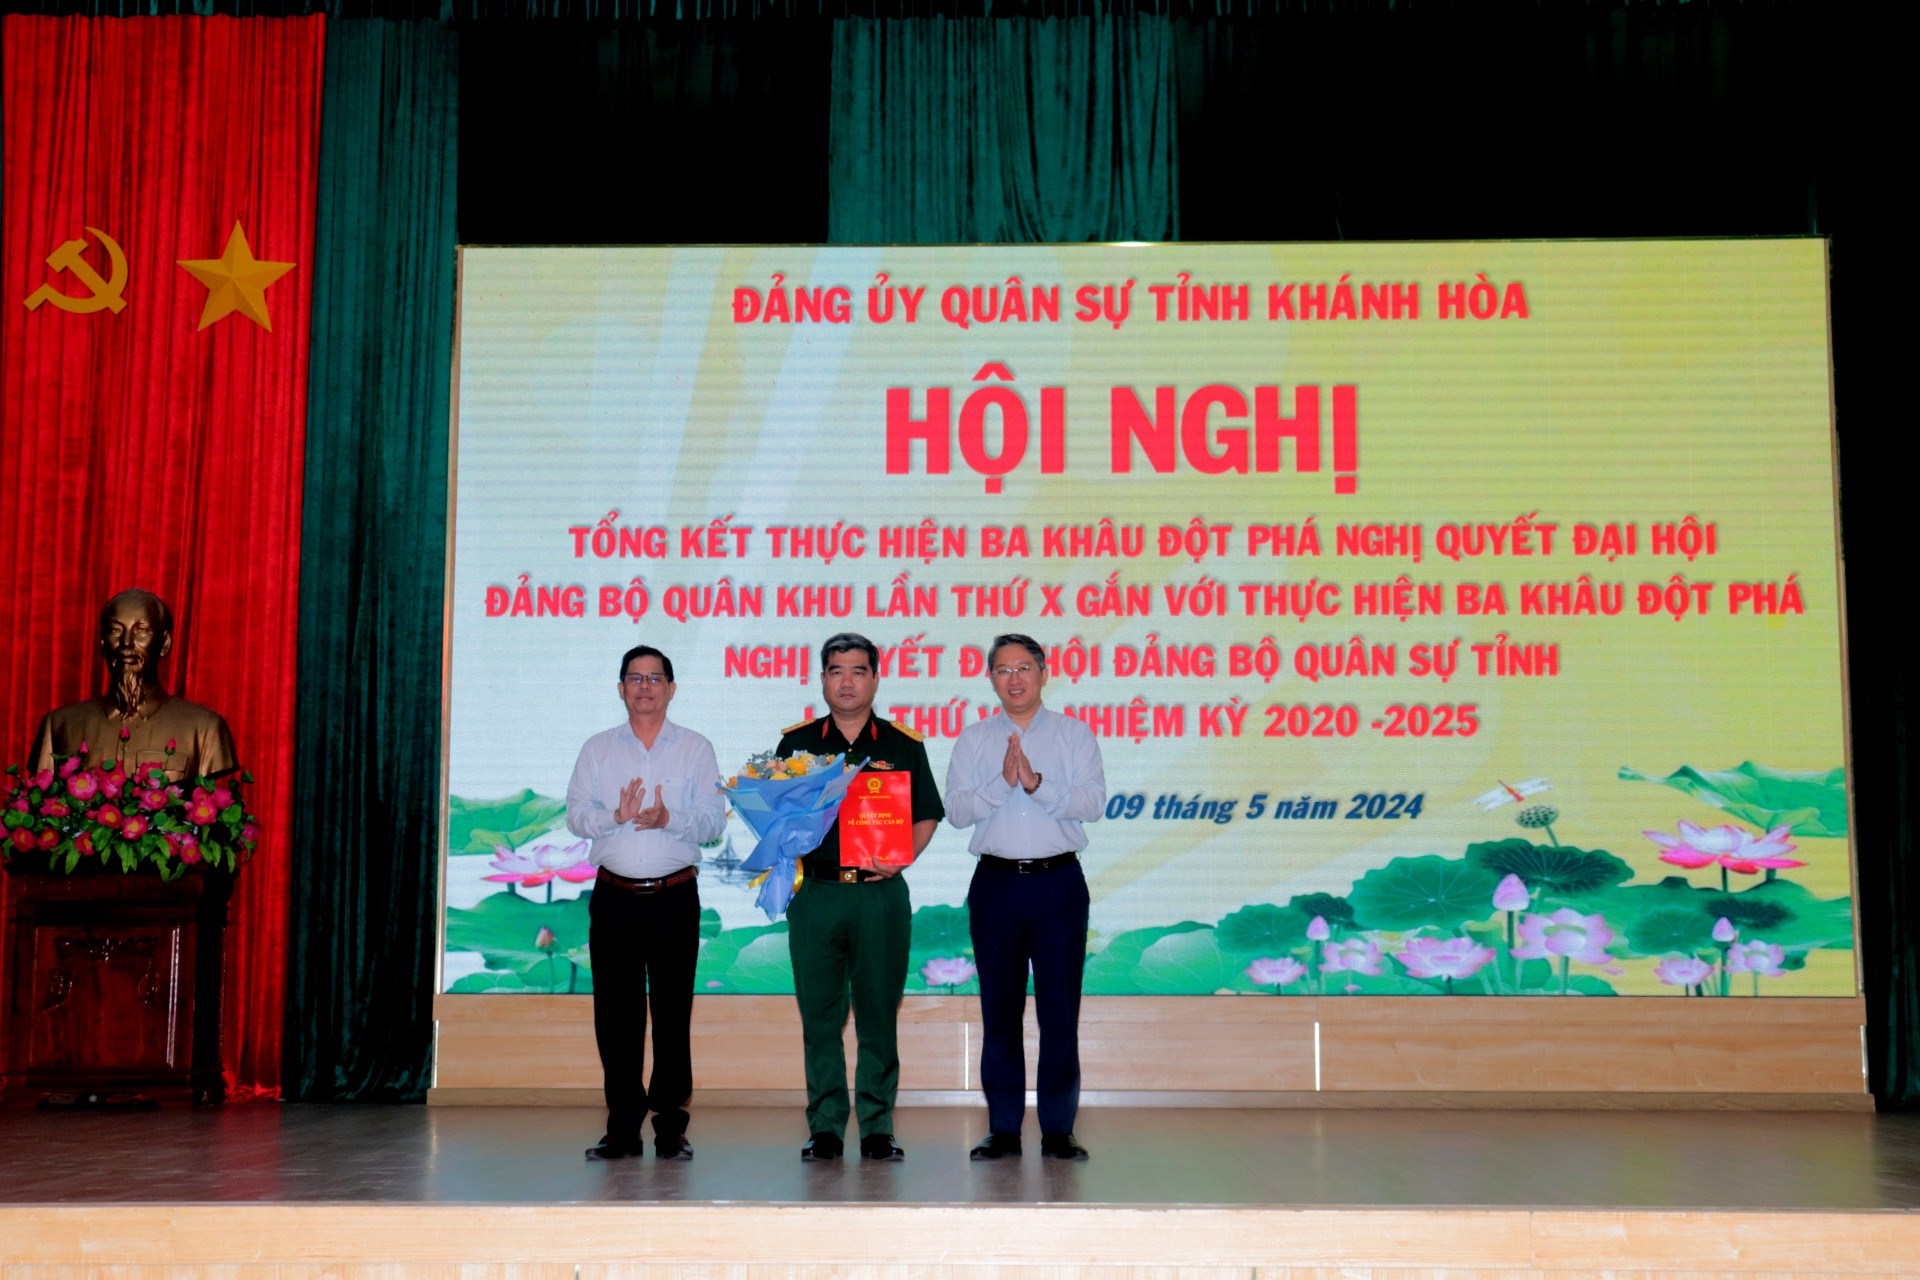 Đảng ủy Quân sự tỉnh Khánh Hòa:  Tổng kết thực hiện ba khâu đột phá Nghị quyết Đại hội Đảng bộ Quân khu lần thứ X